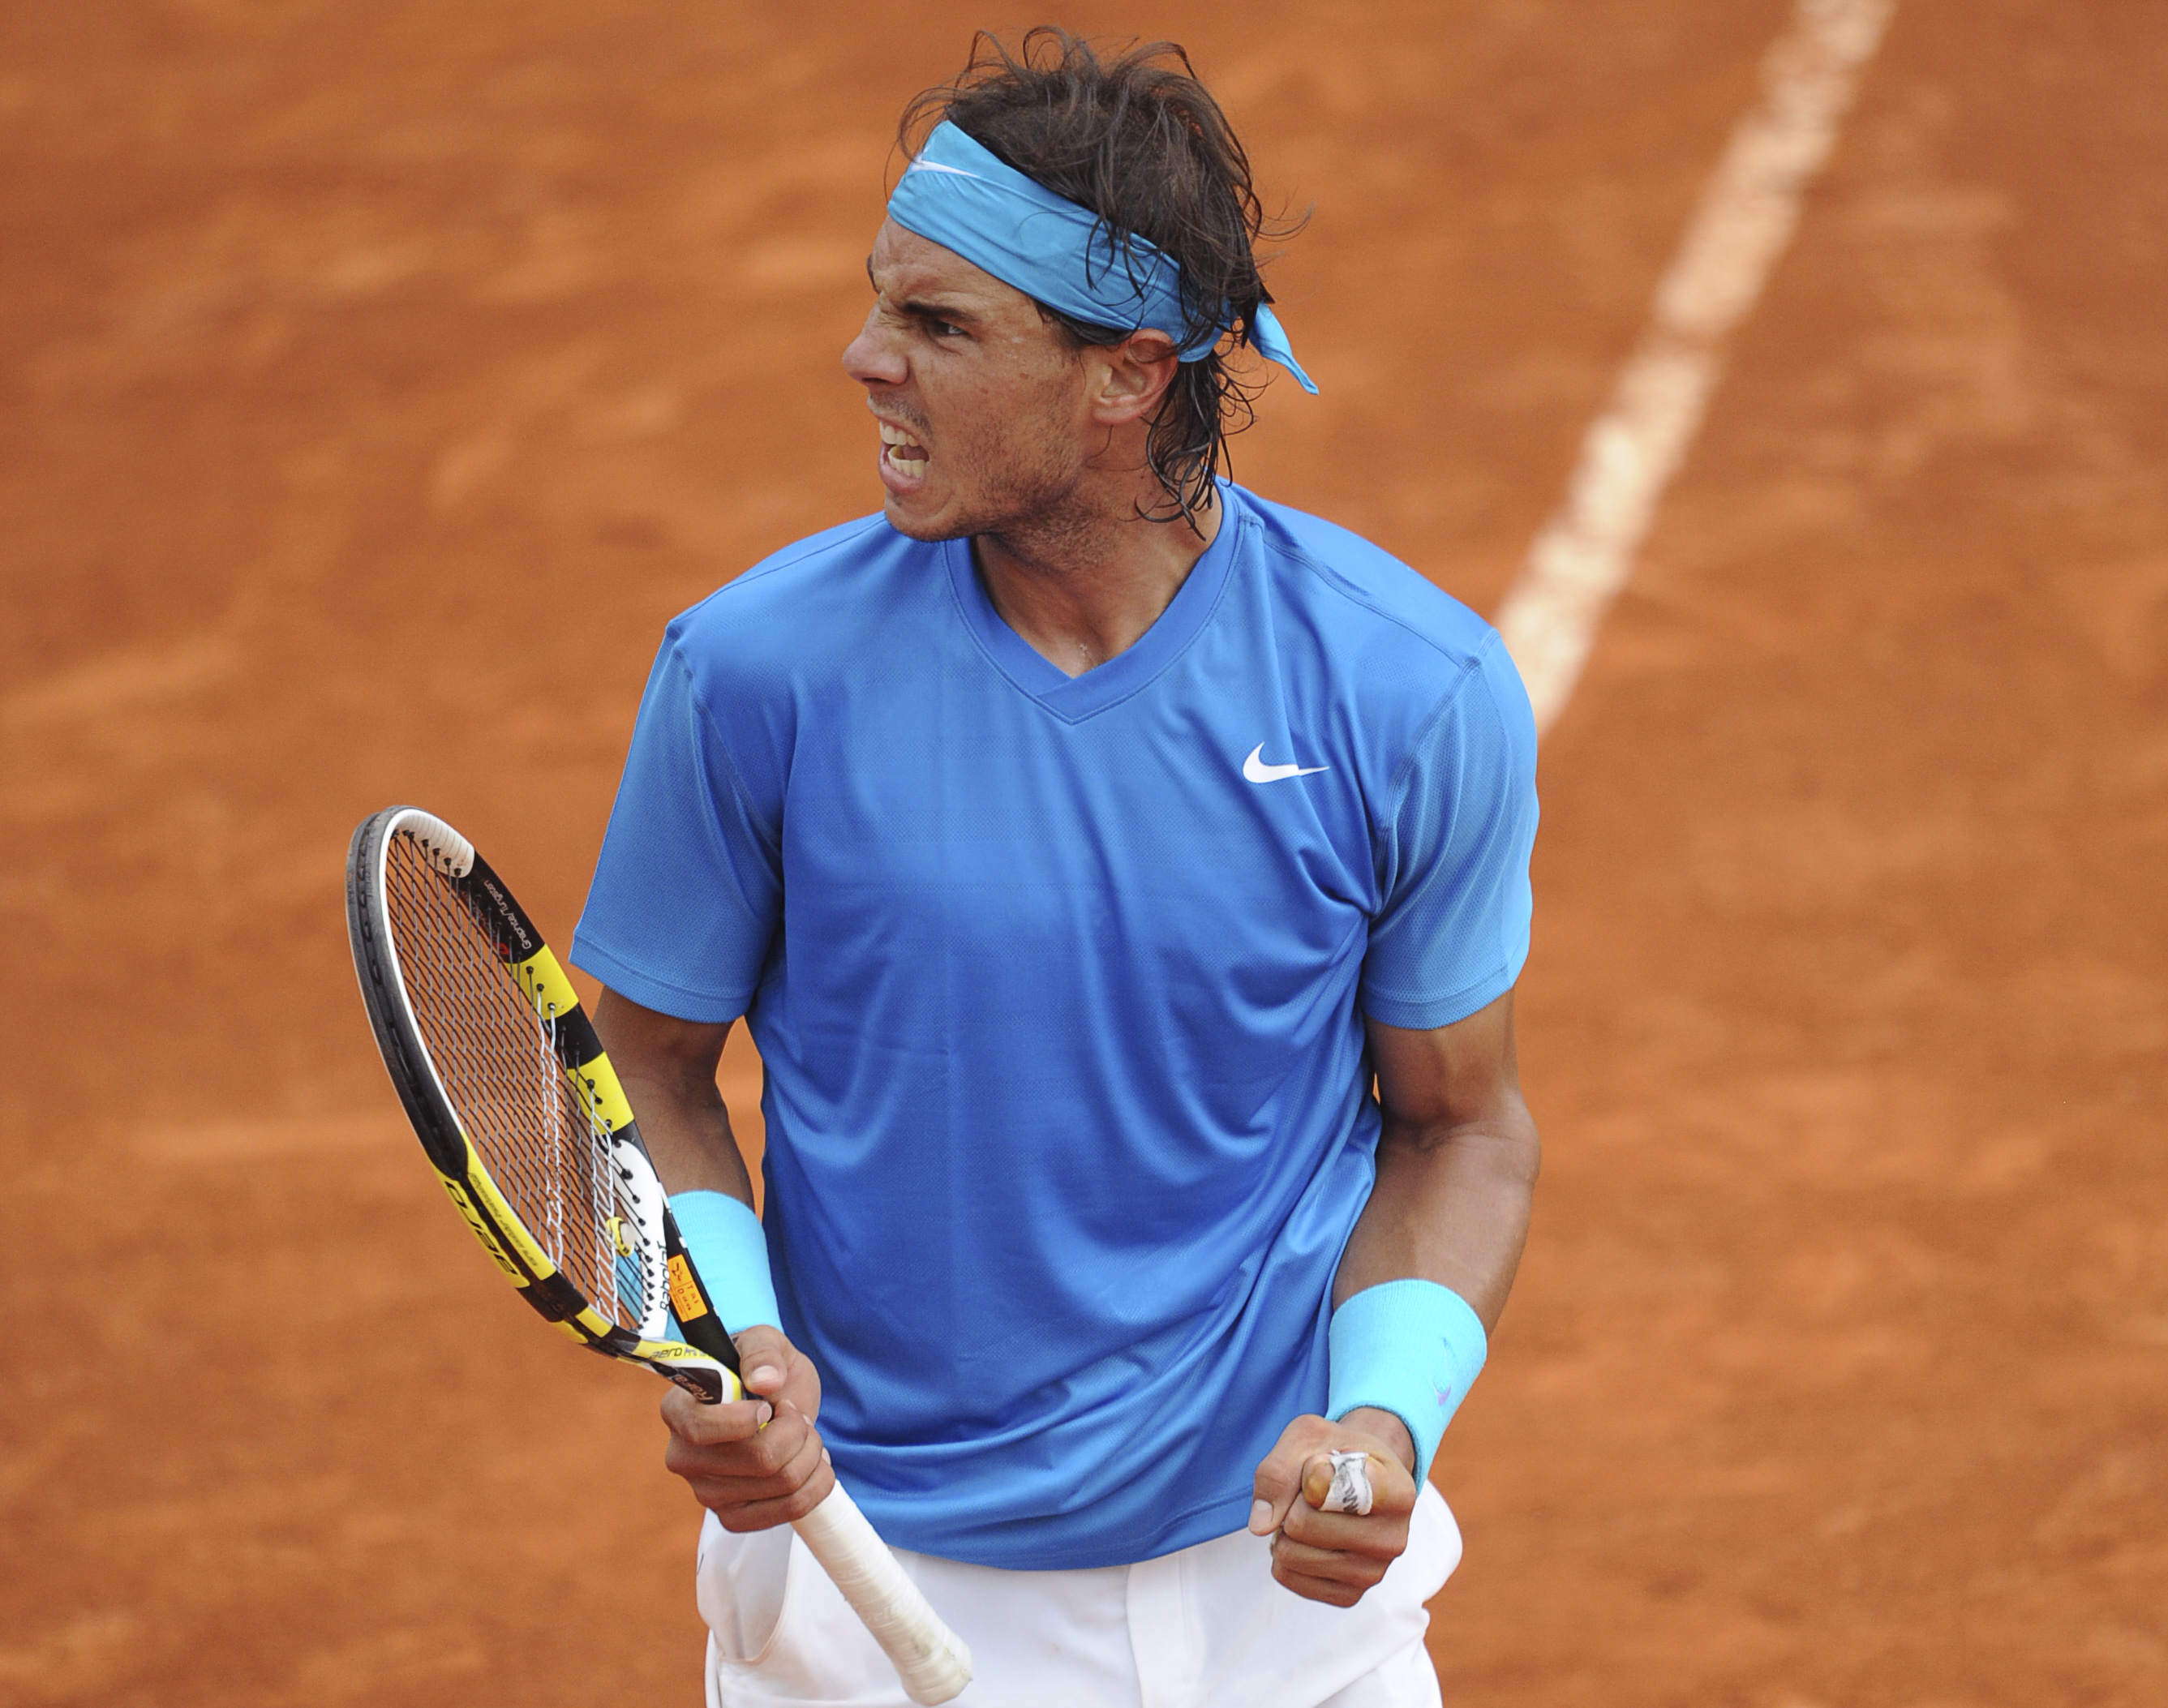 Tennis, Rafael Nadal, Roger Federer